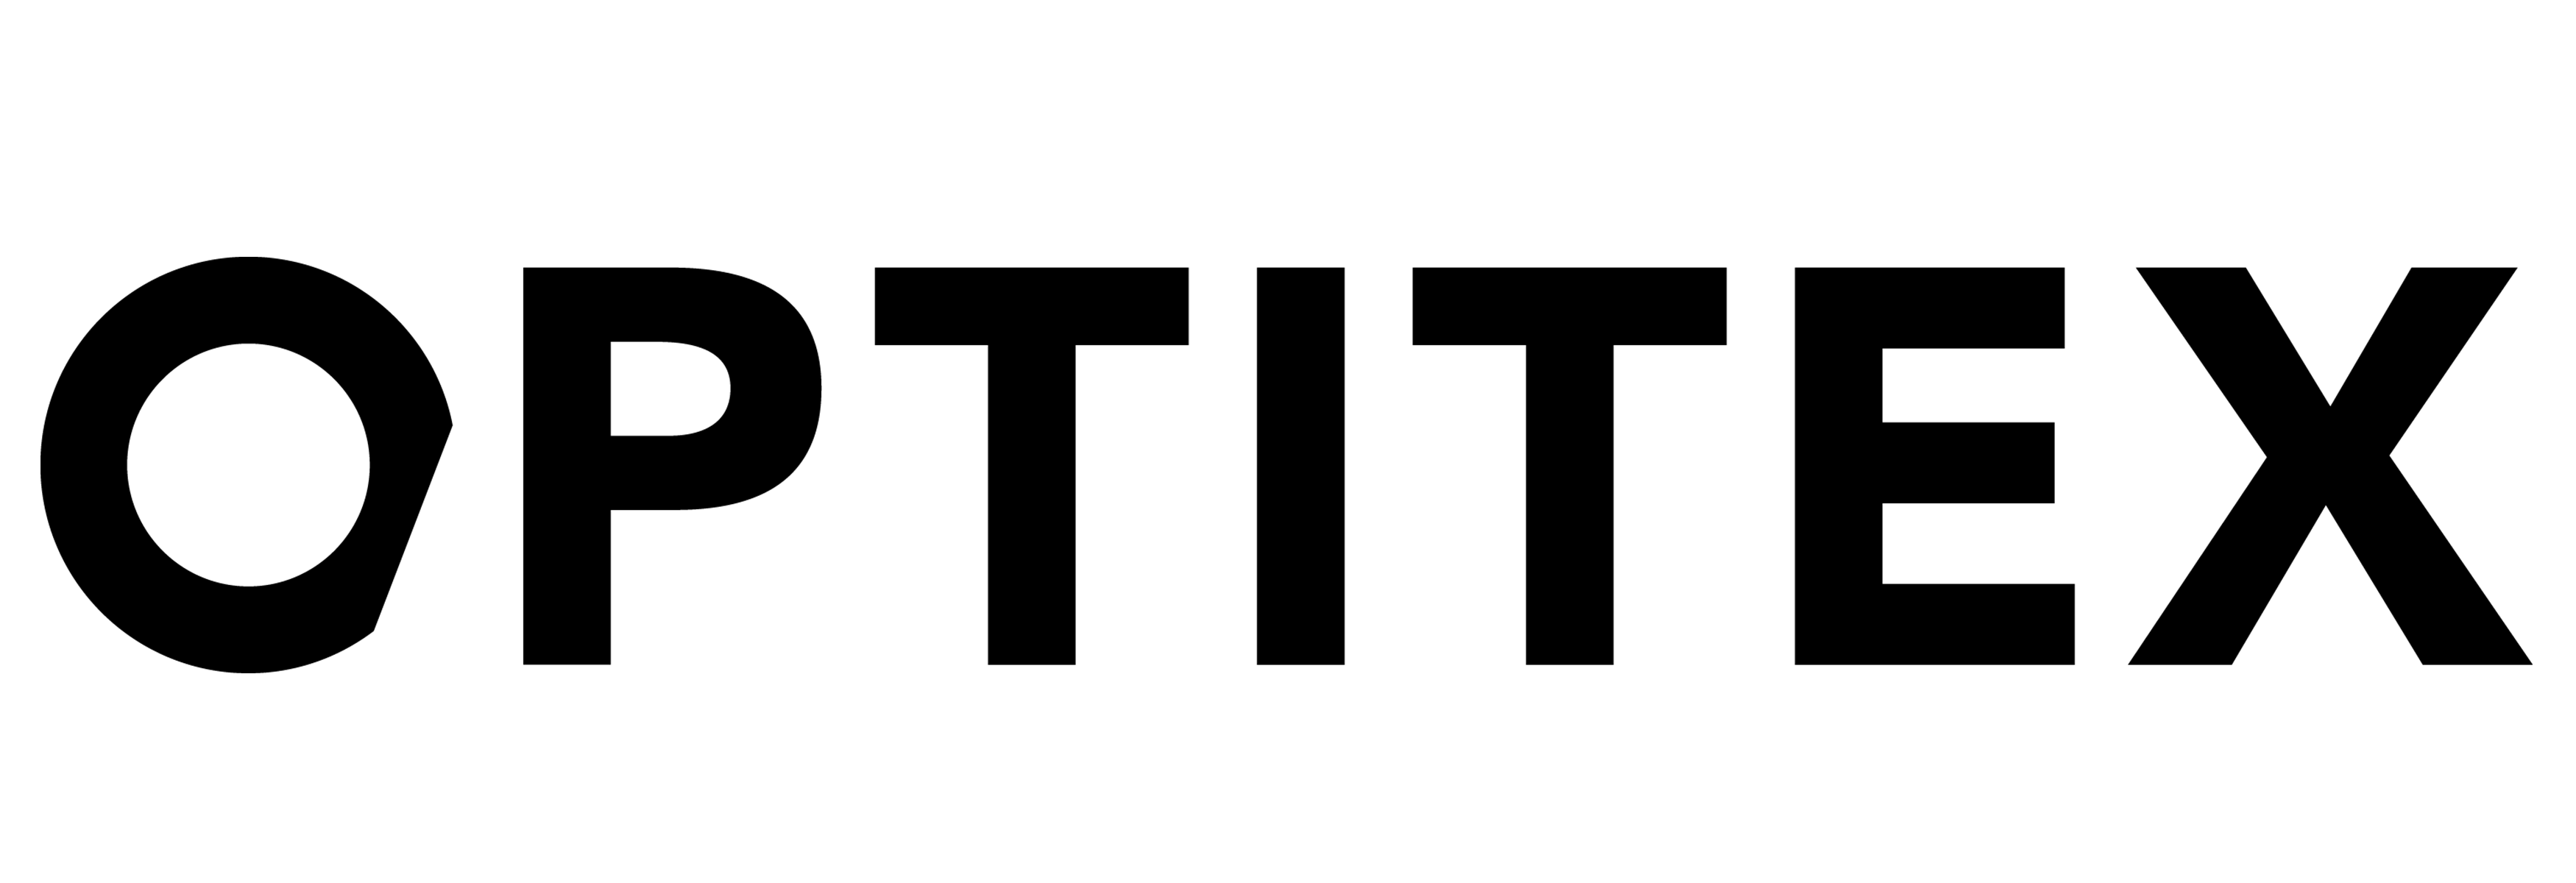 Heng's logo